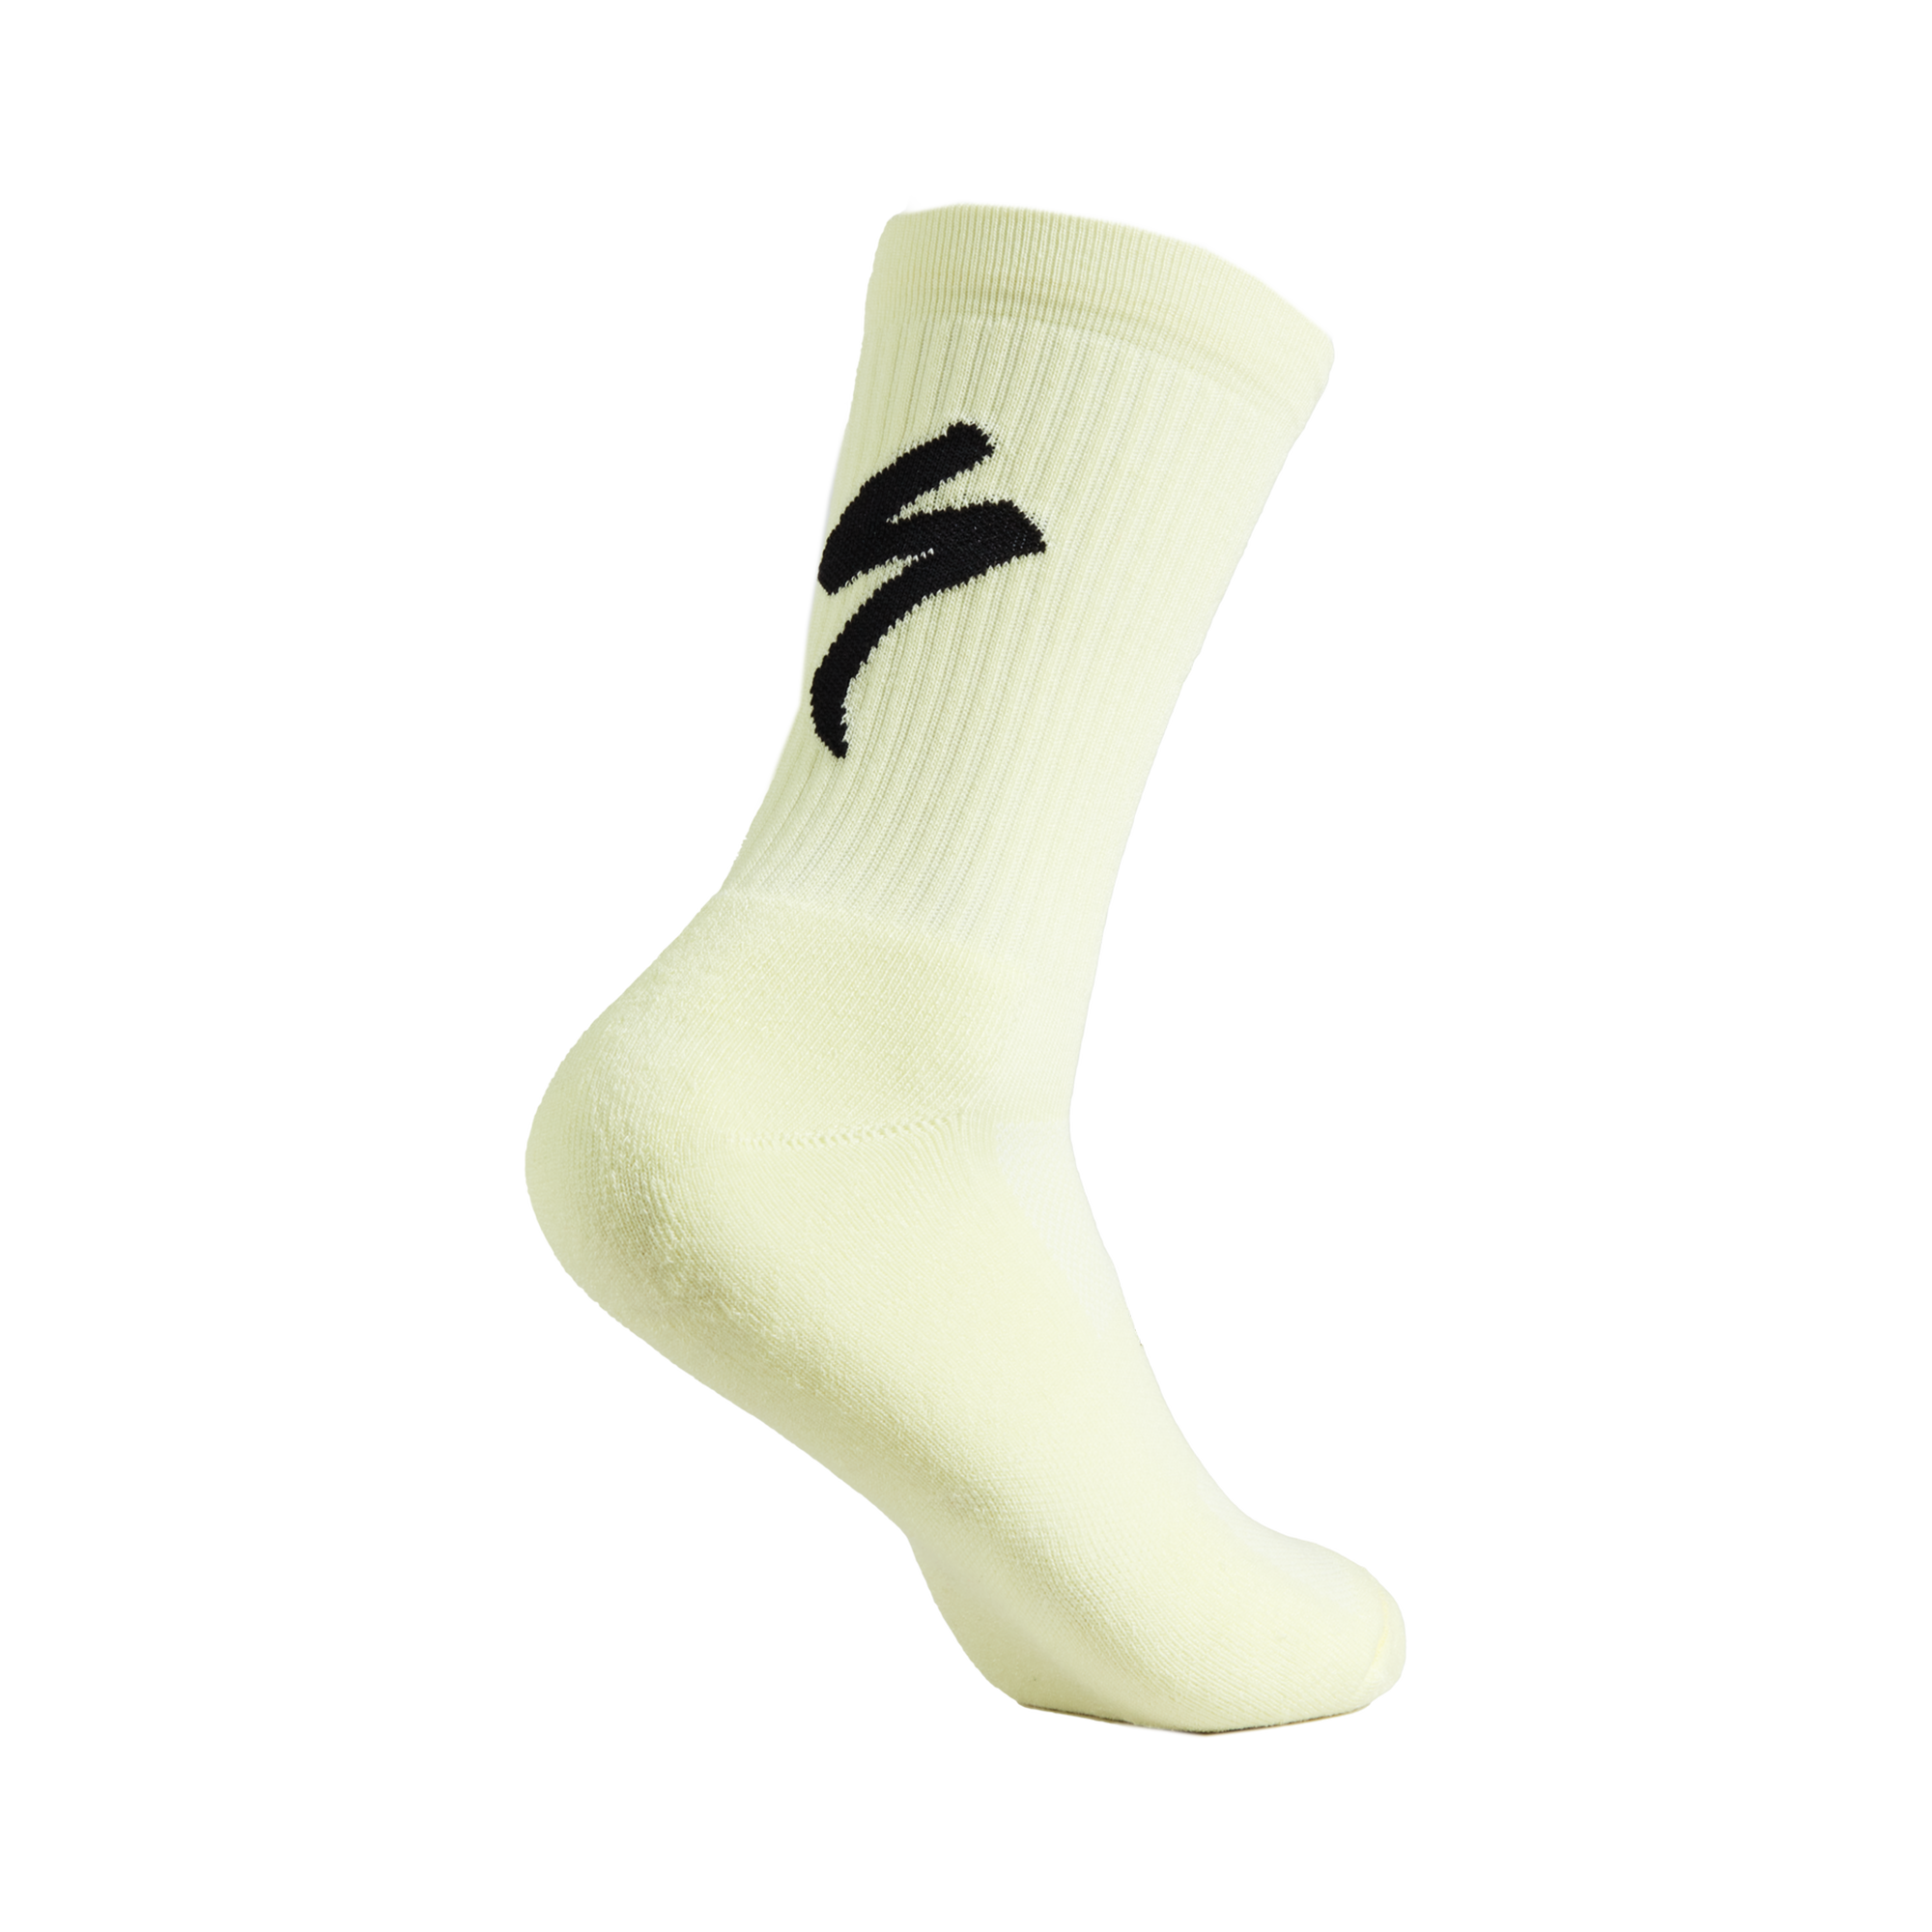 Specialized Socks Calcetines hombre / mujer térmicos de algodón grueso, de  invierno, suaves, cálidos y acolchonados